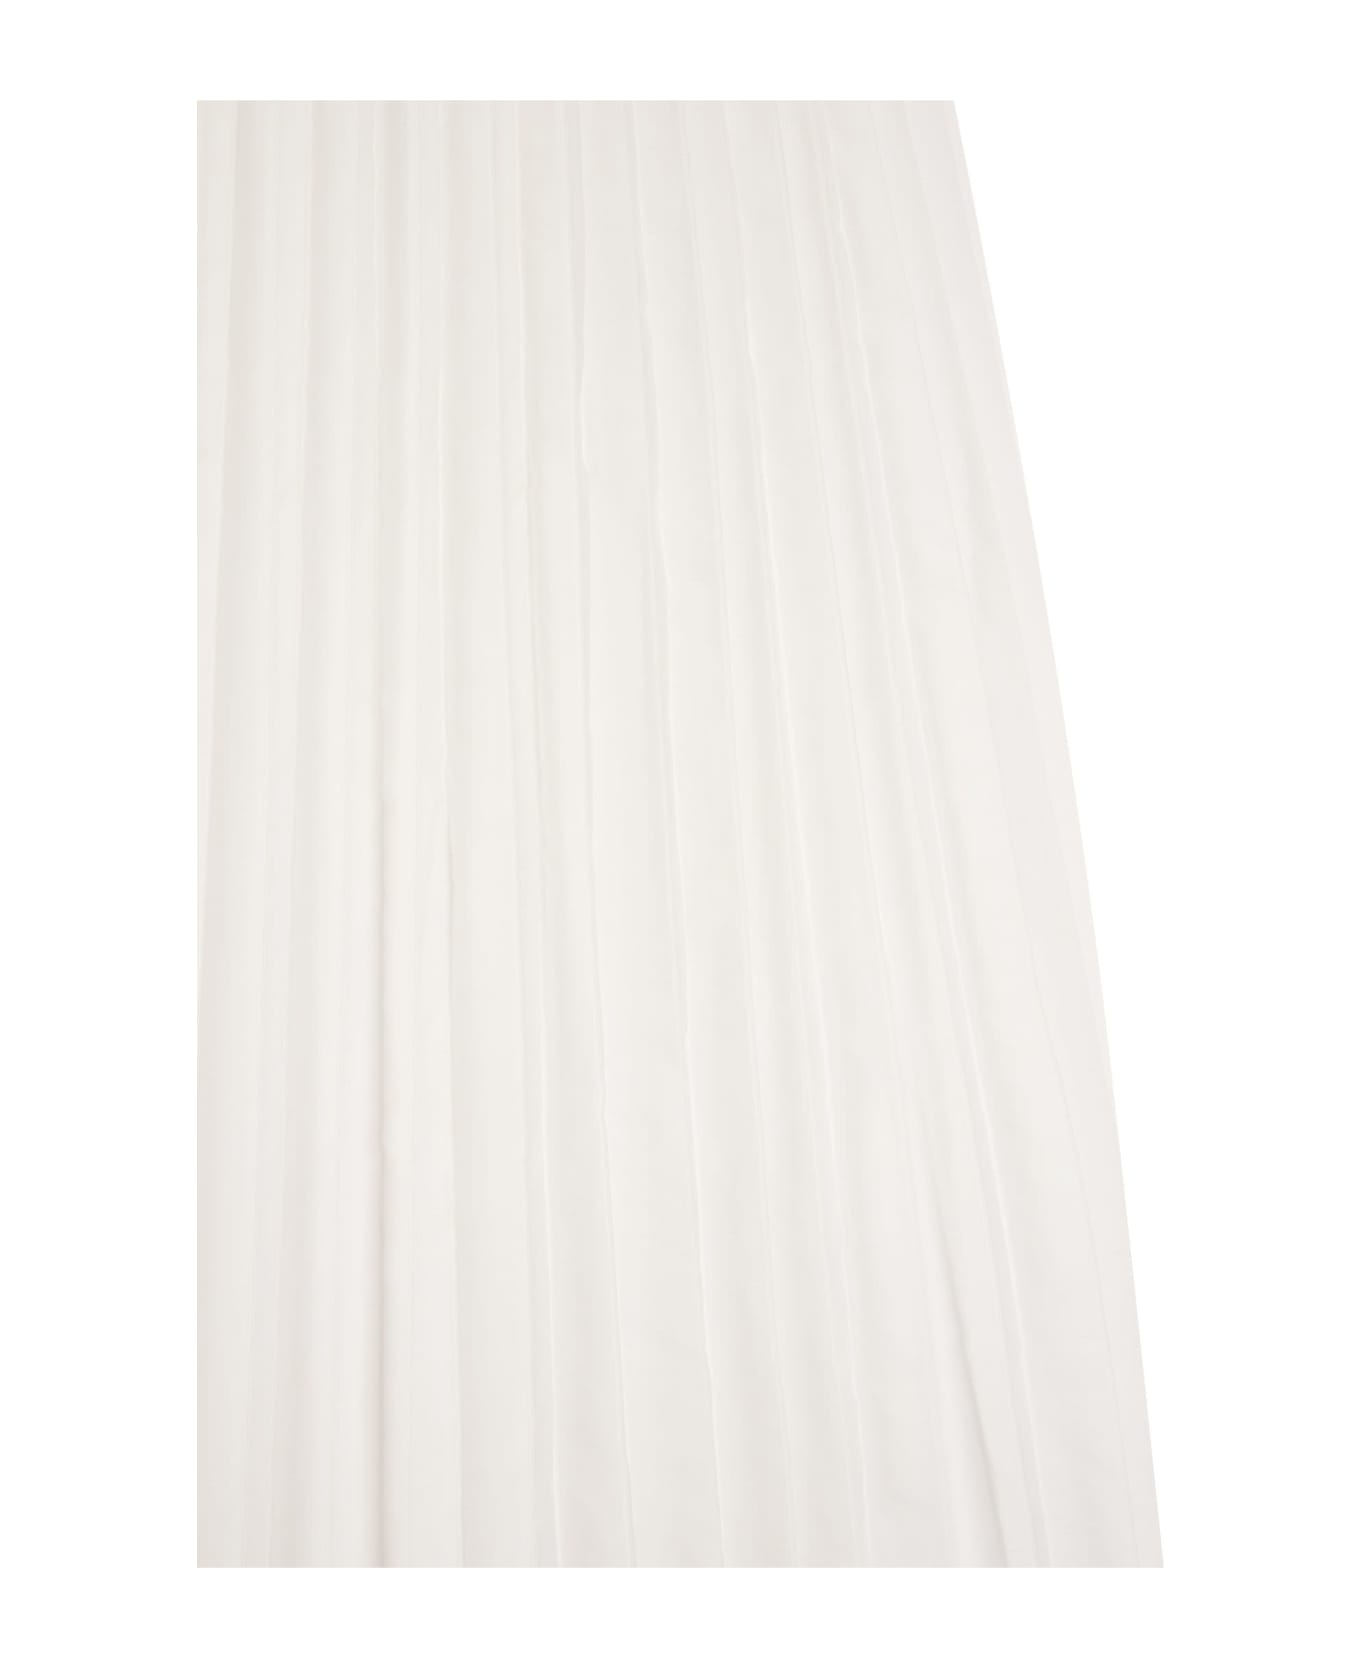 RED Valentino Pleated Taffeta Skirt - White スカート